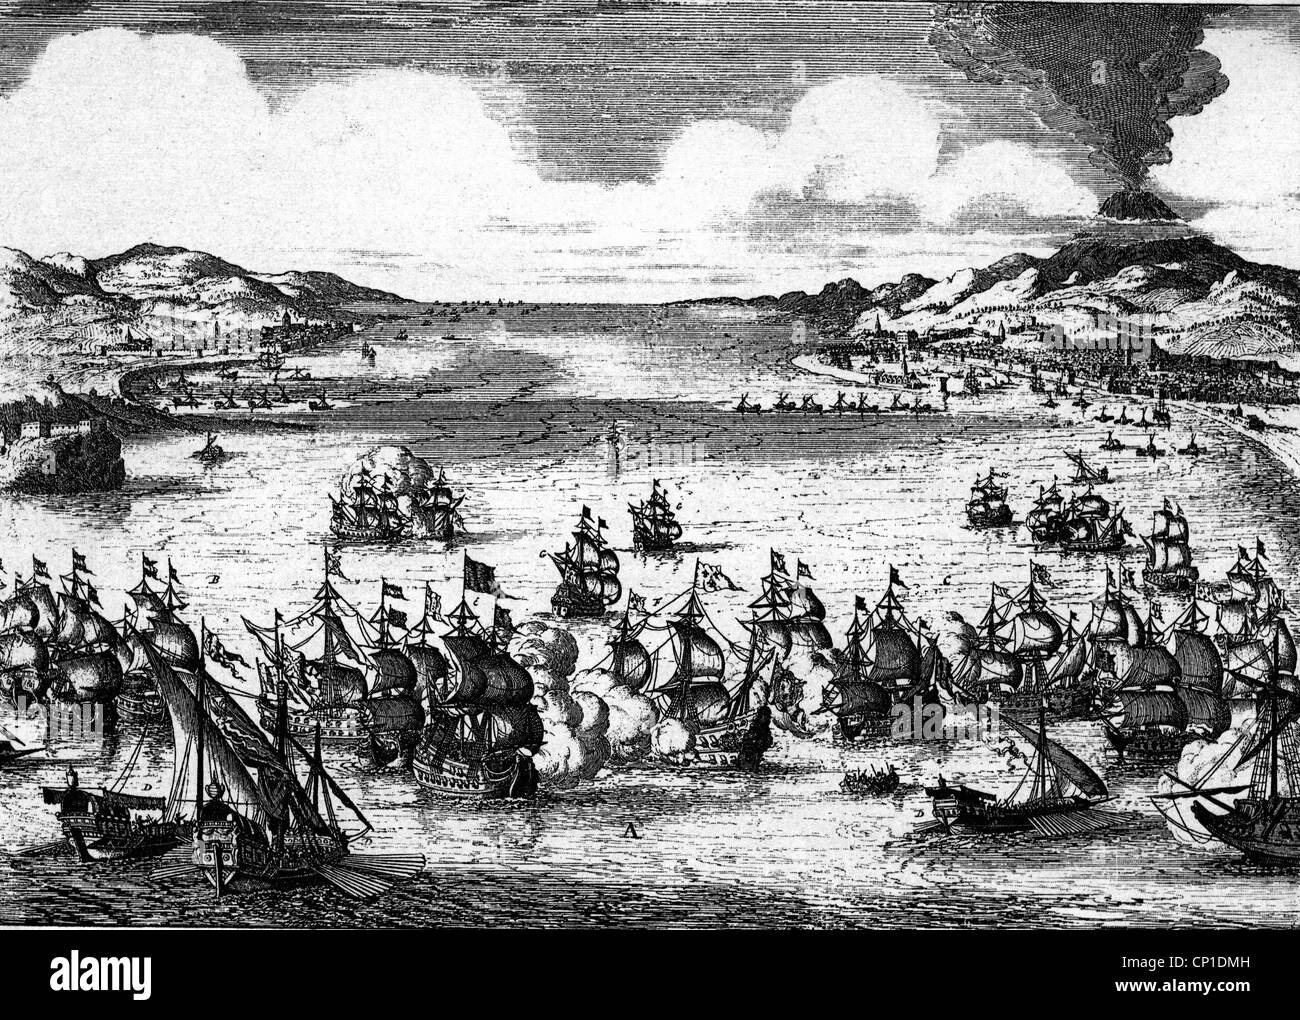 events-franco-dutch-war-1672-1679-naval-